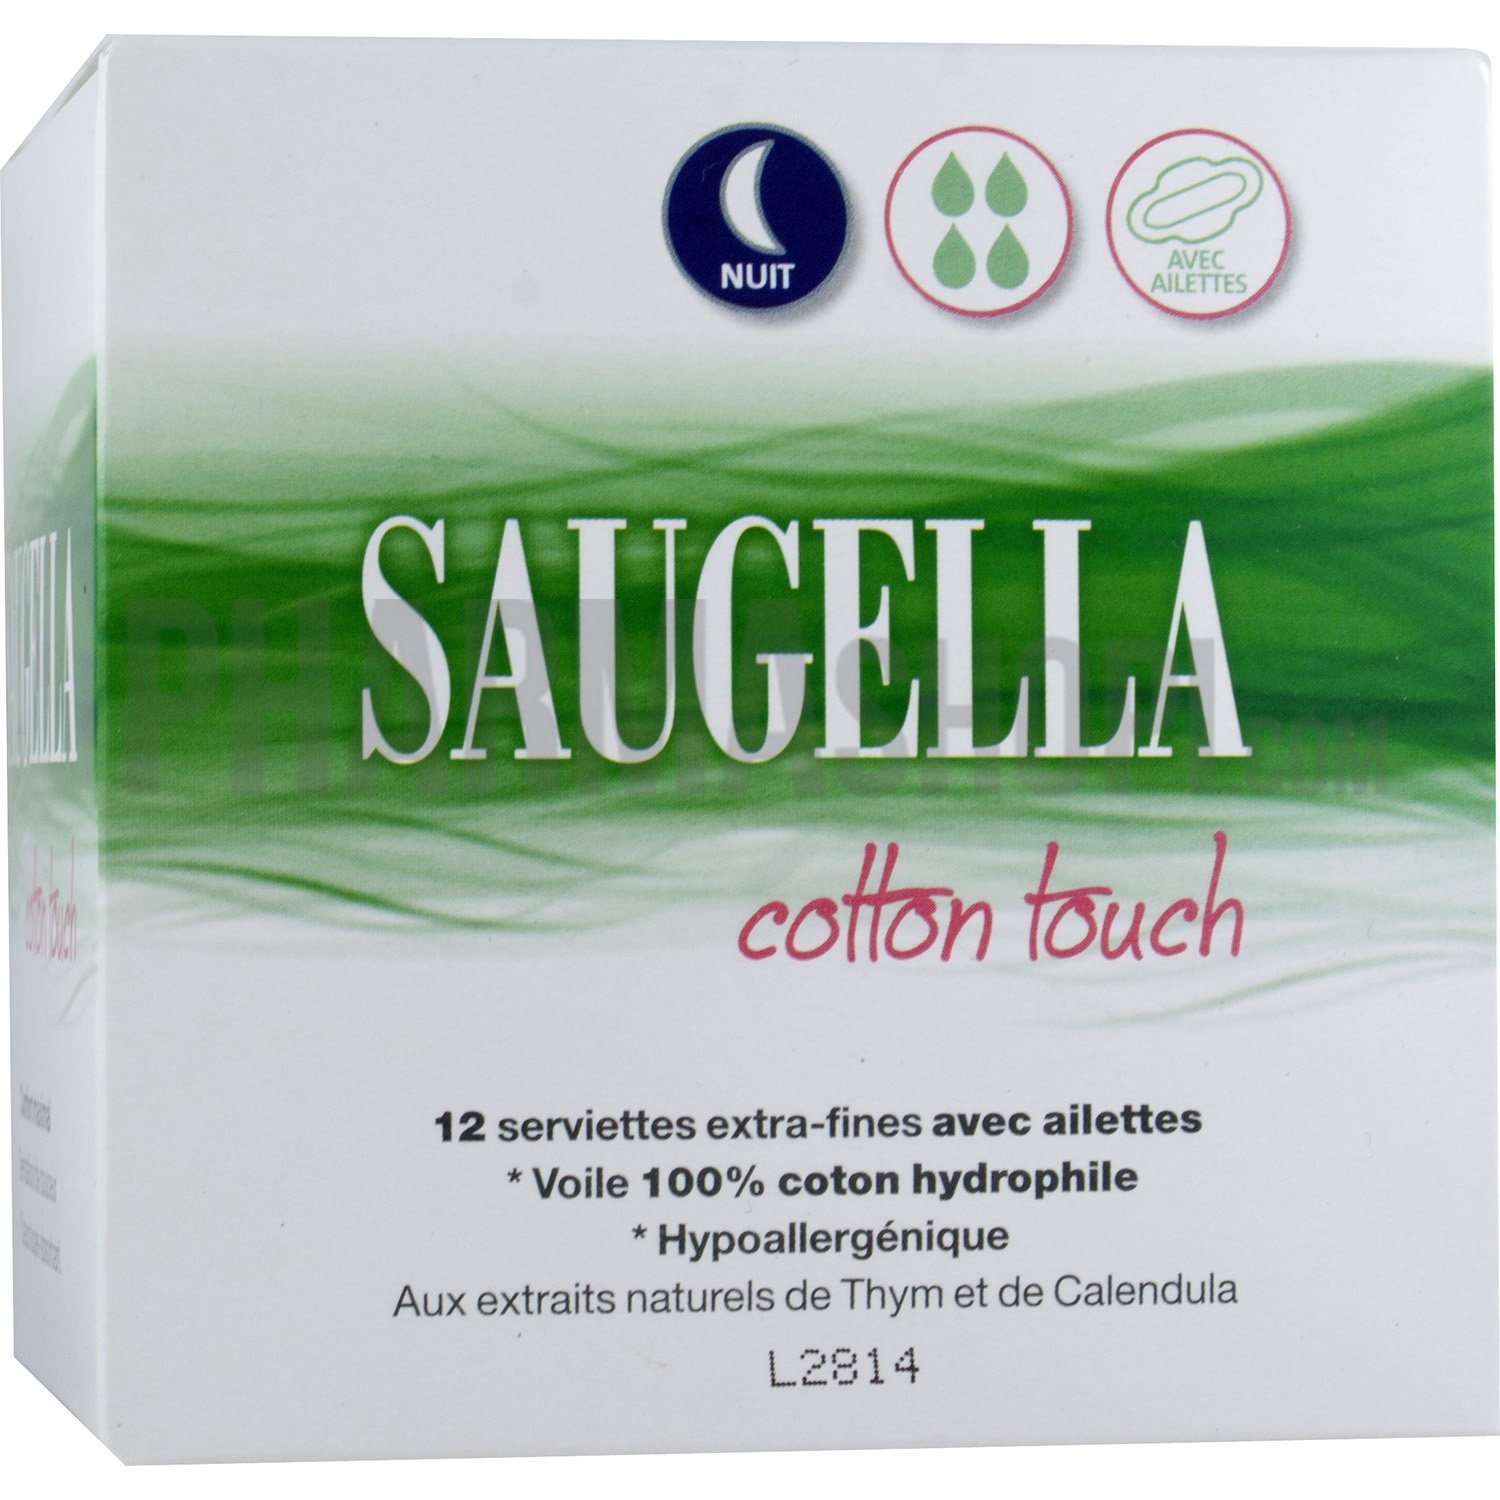 Cotton touch serviette extra-fine avec ailettes nuit Saugella - boite de 12 serviettes